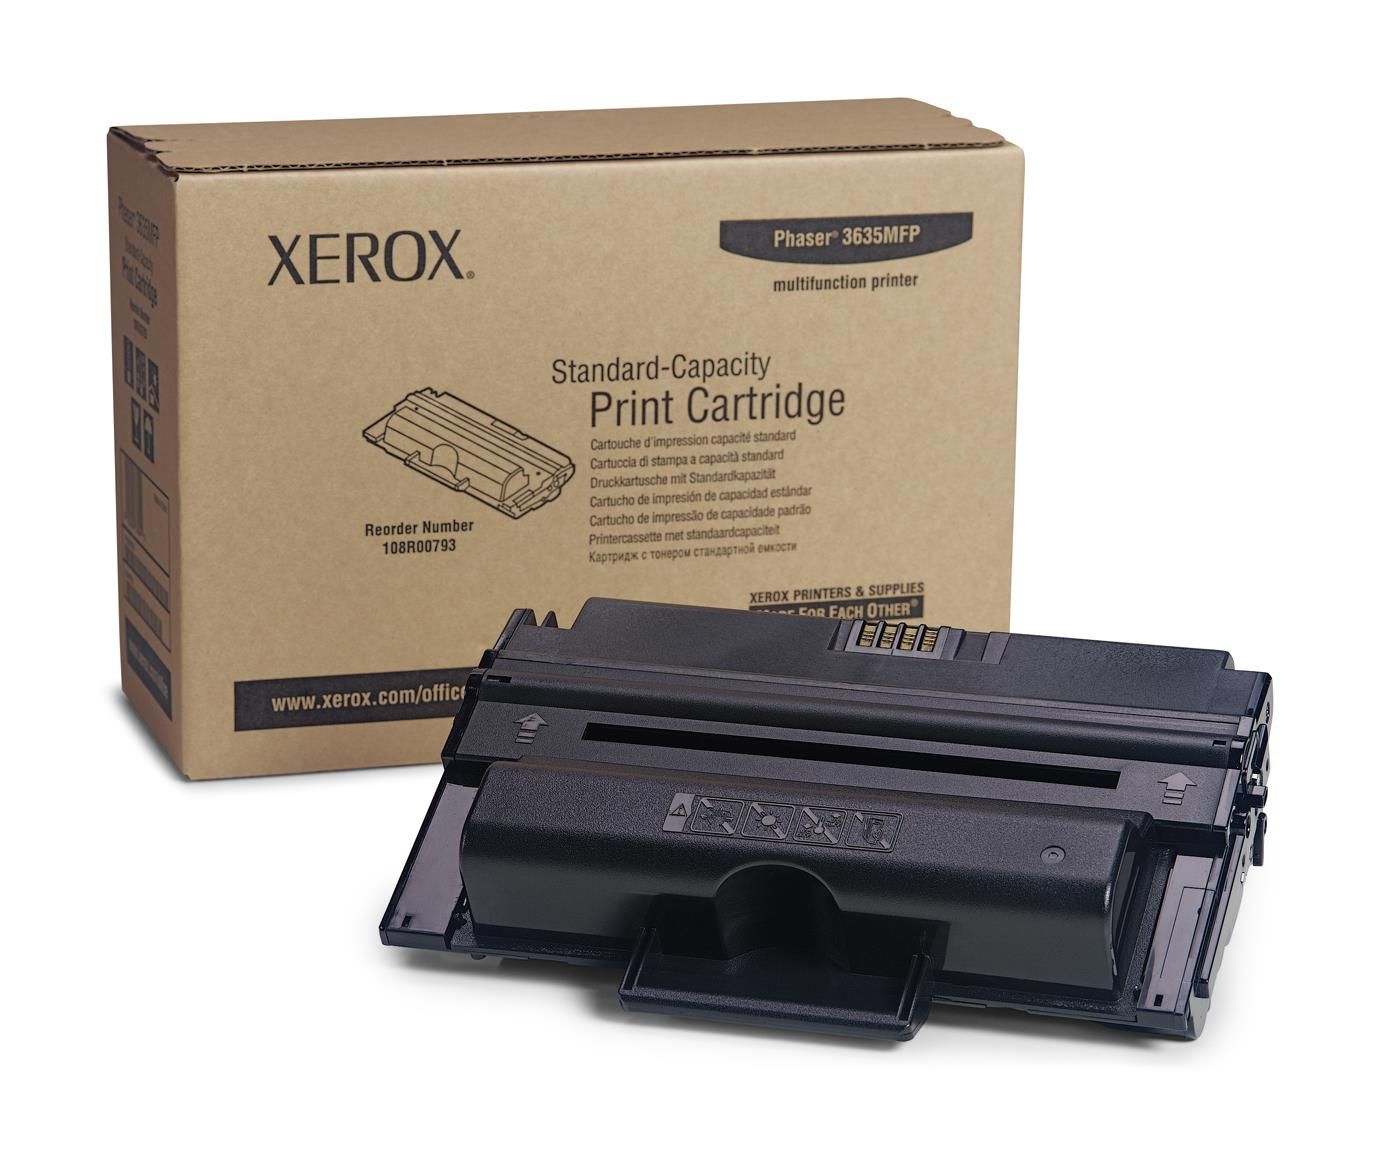 Xerox Print Cartridge Standard